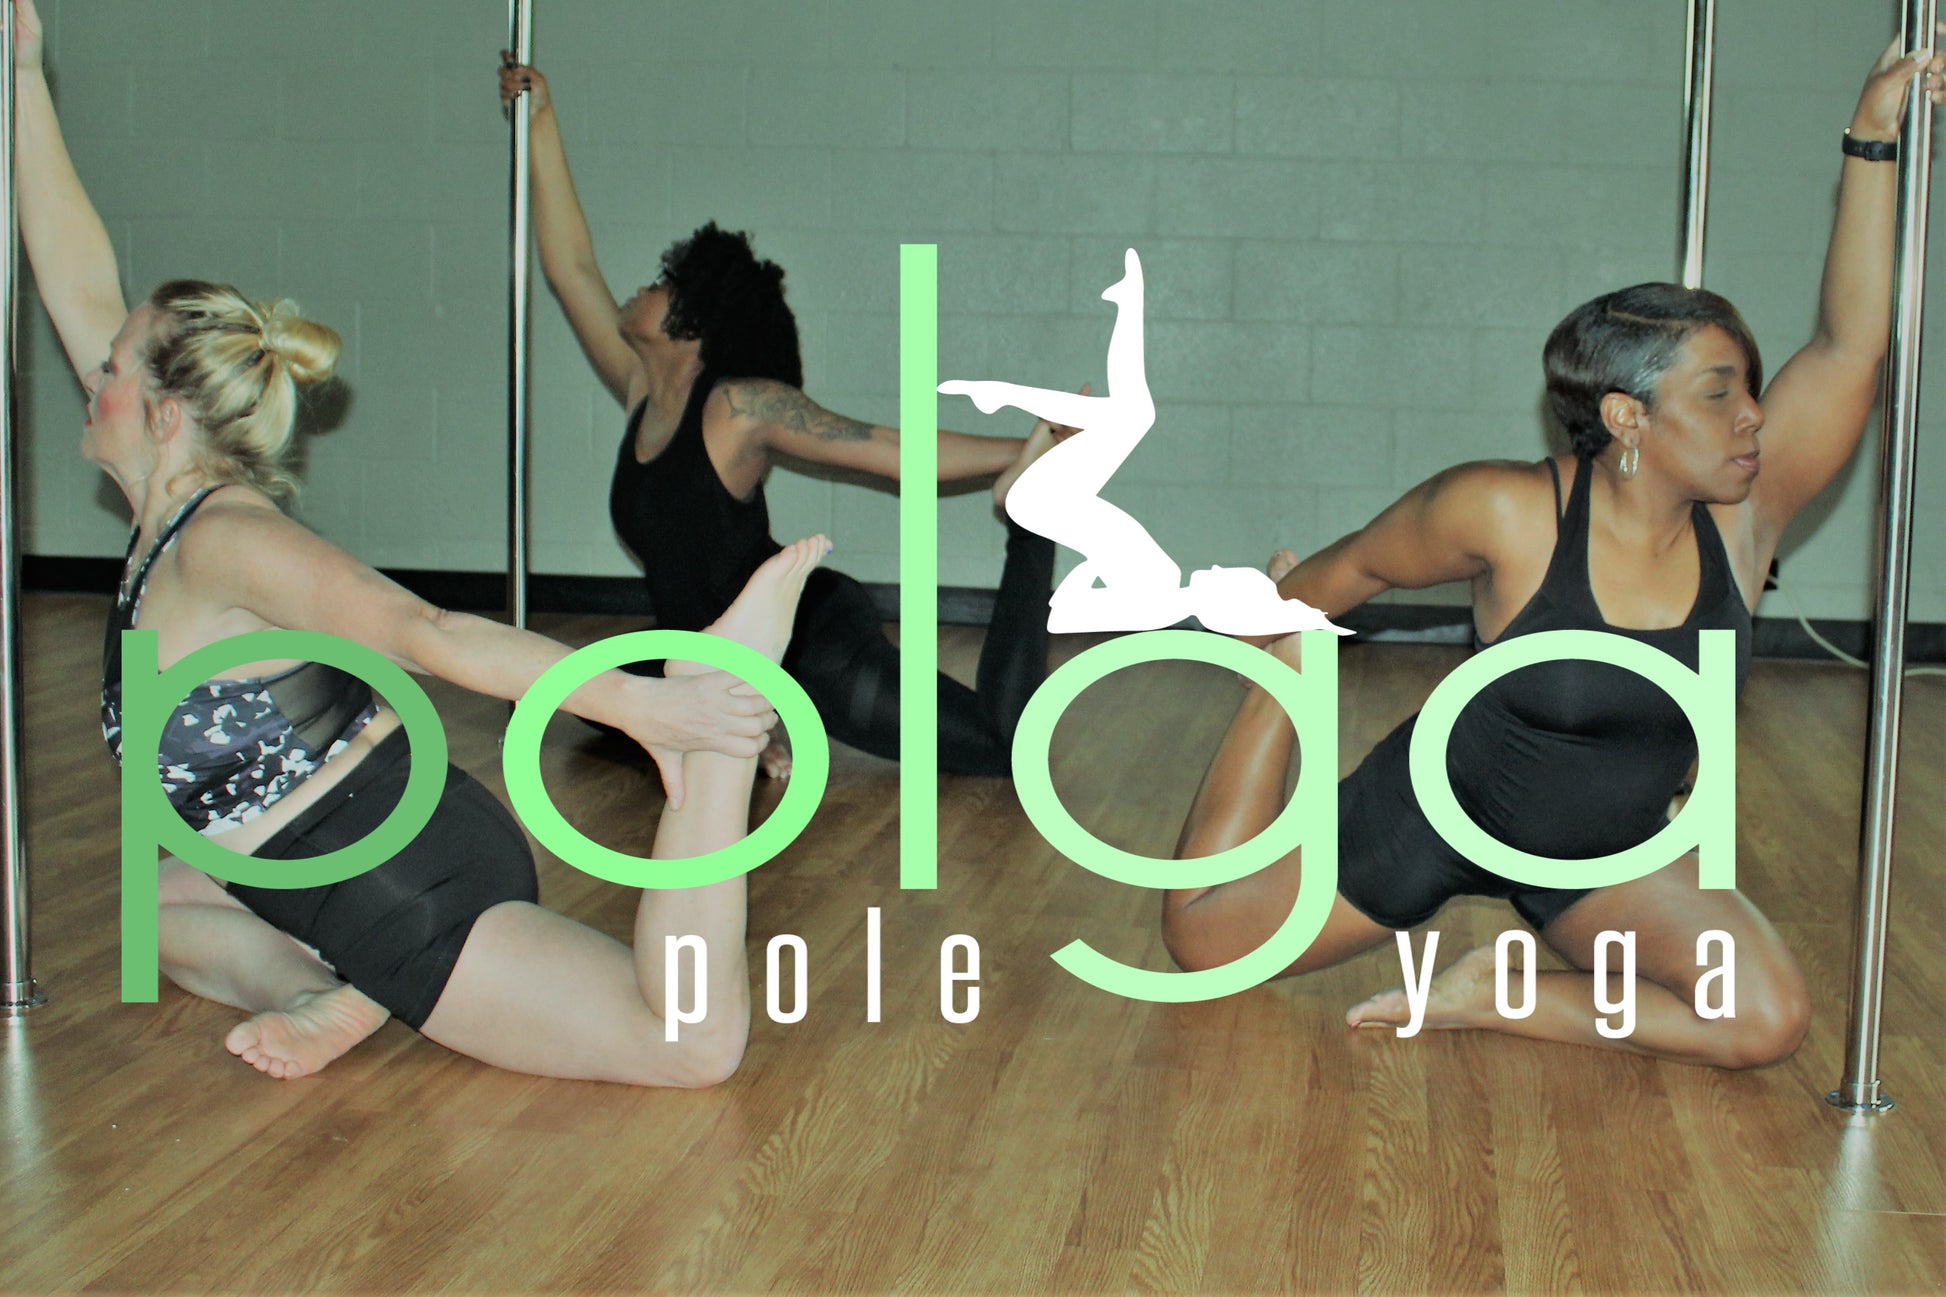 Polga (pole yoga) Class - Stiletto Gym Mobile